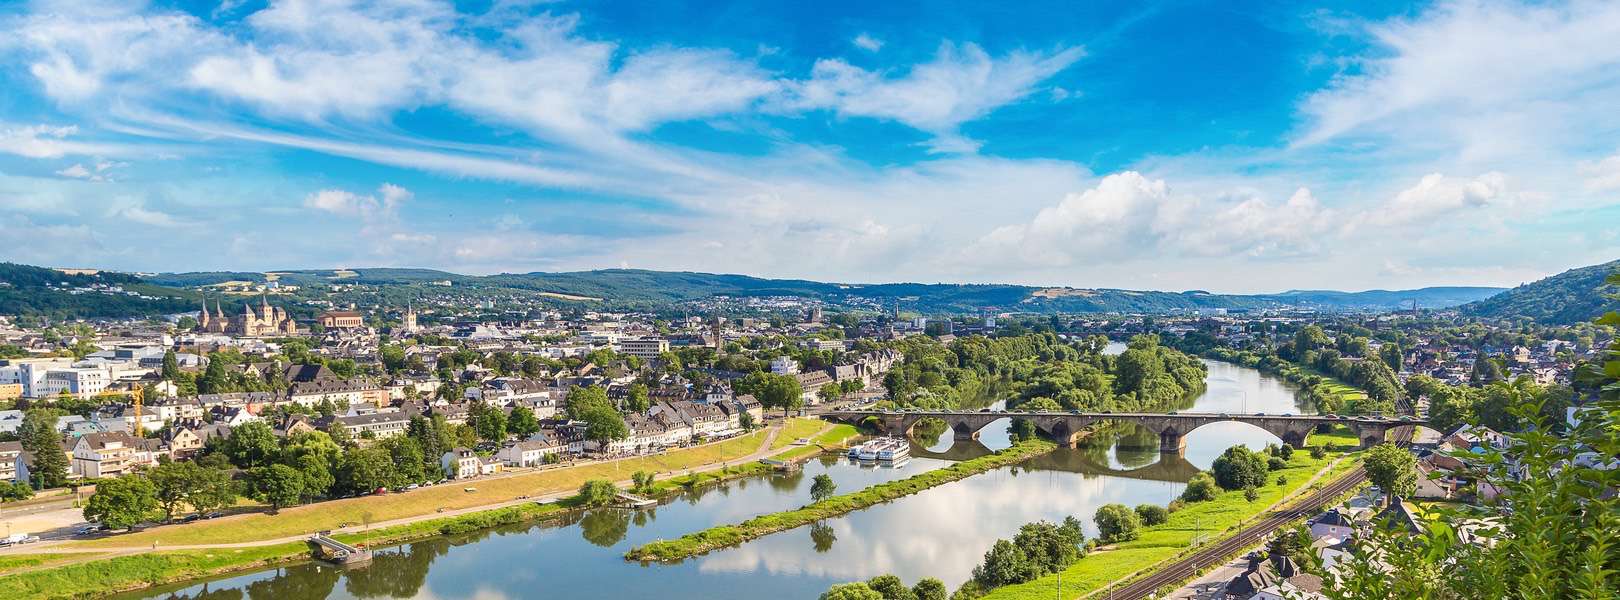 Blick auf die älteste Stadt Deutschlands Trier